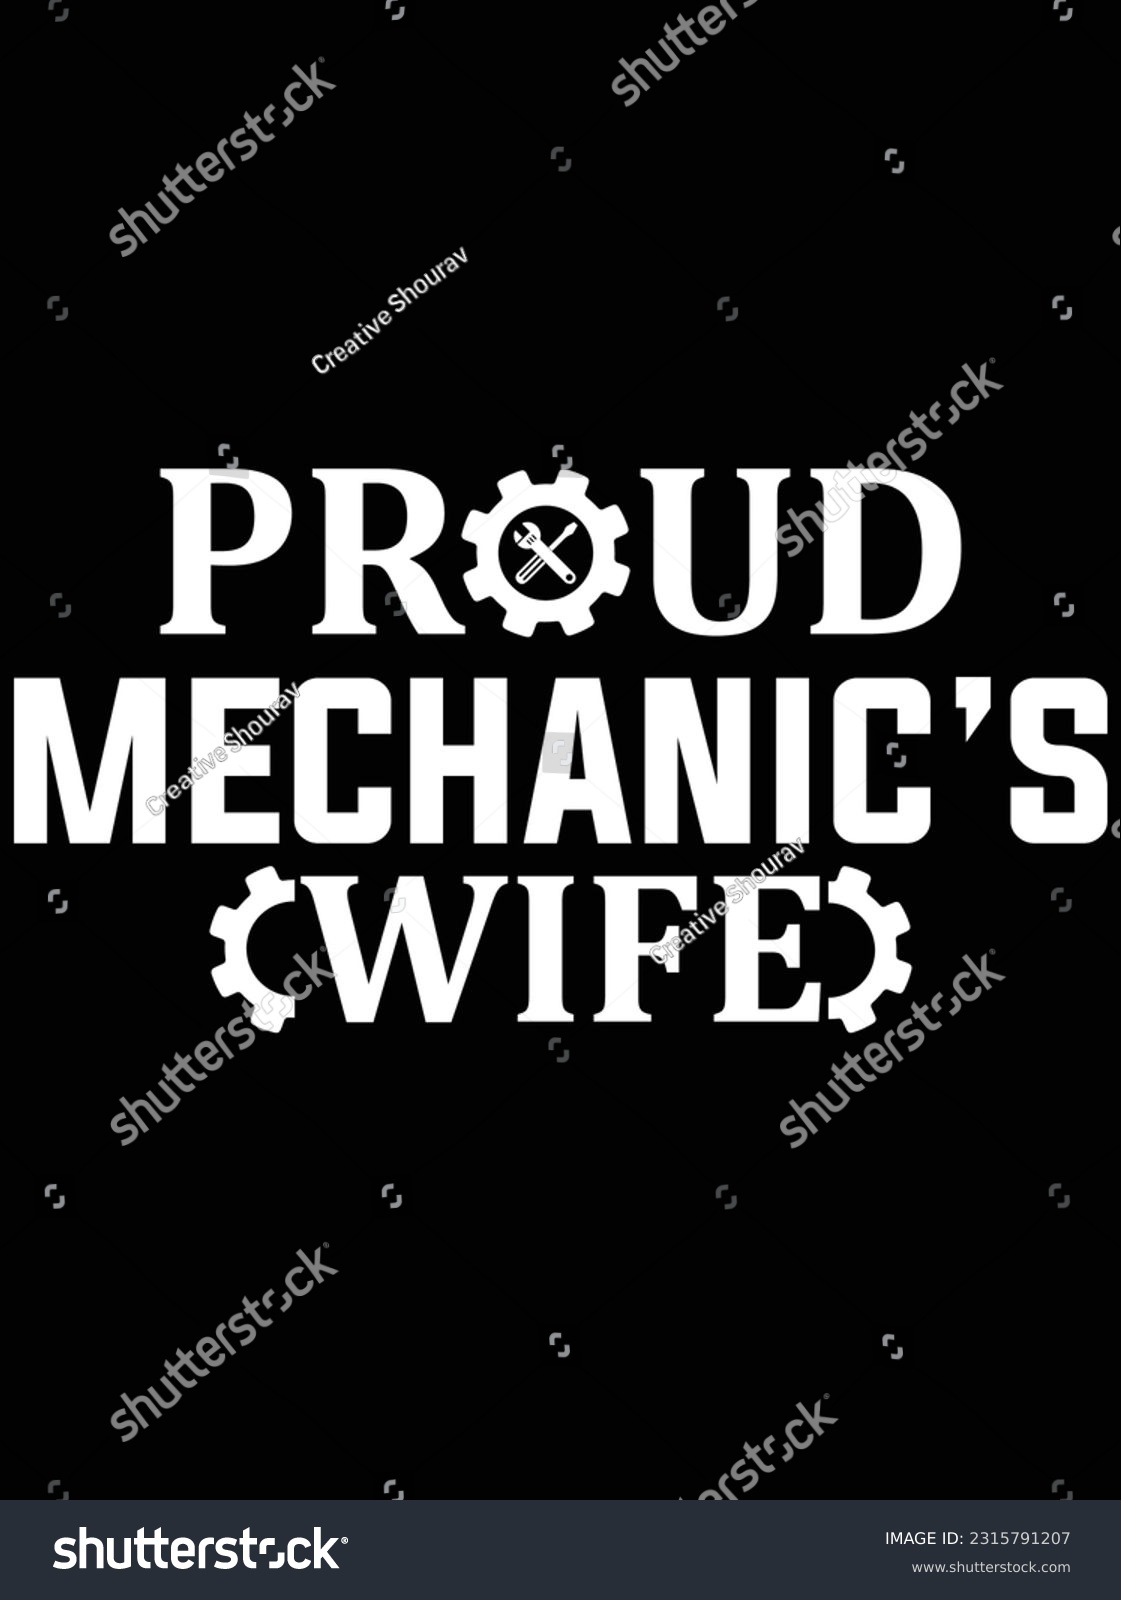 SVG of Proud mechanic's wife vector art design, eps file. design file for t-shirt. SVG, EPS cuttable design file svg